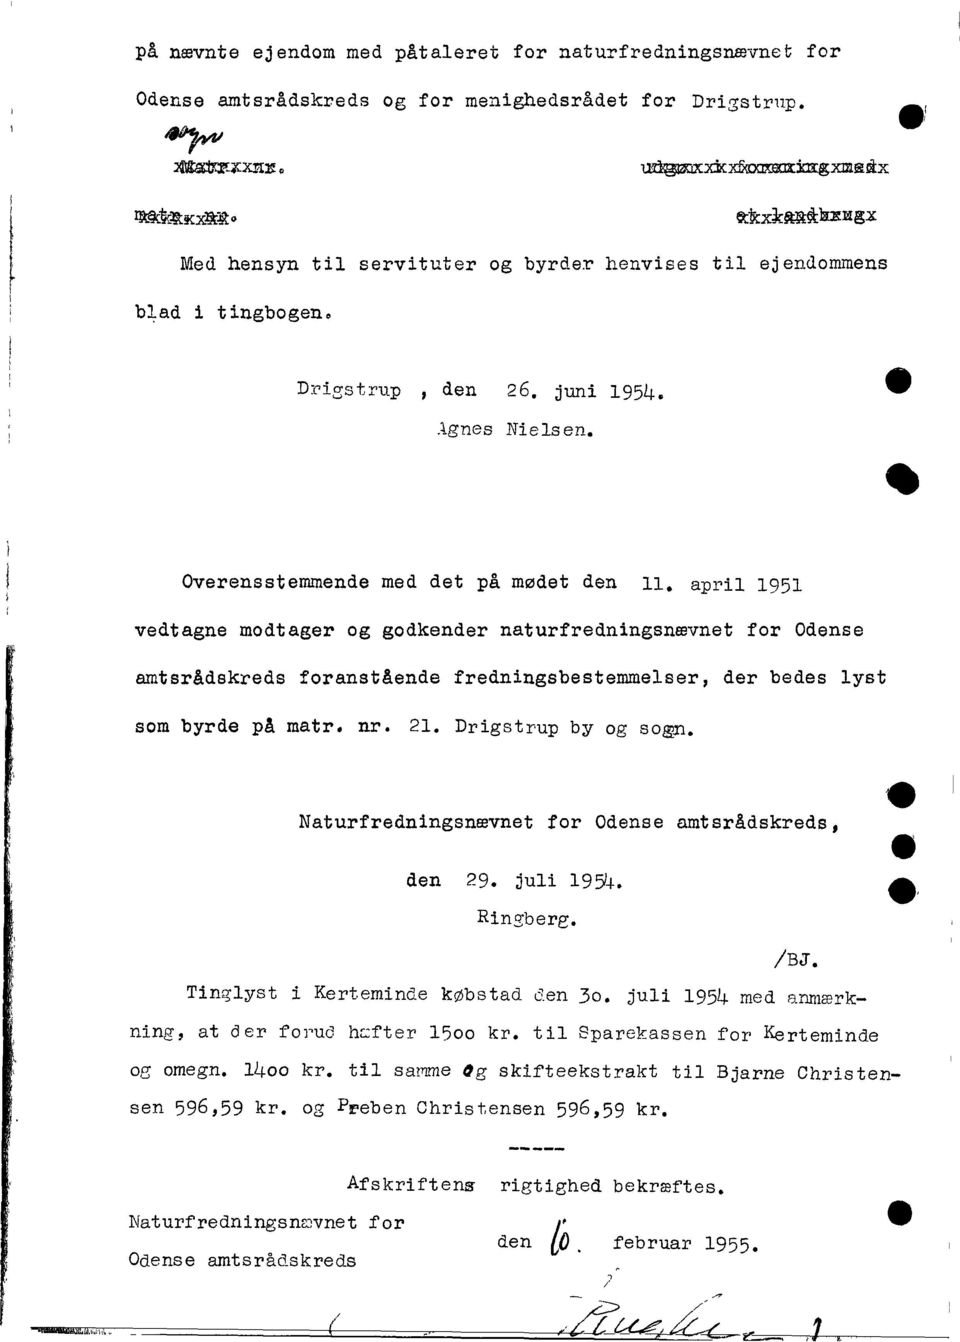 april 1951 vedtagne modtager og godkender naturfredningsnævnet for Odense amtsrådskreds foranstående fredningsbestemmelser, der bedes lyst som byrde på matr. nr. 21. Drigstrup by og sogn.